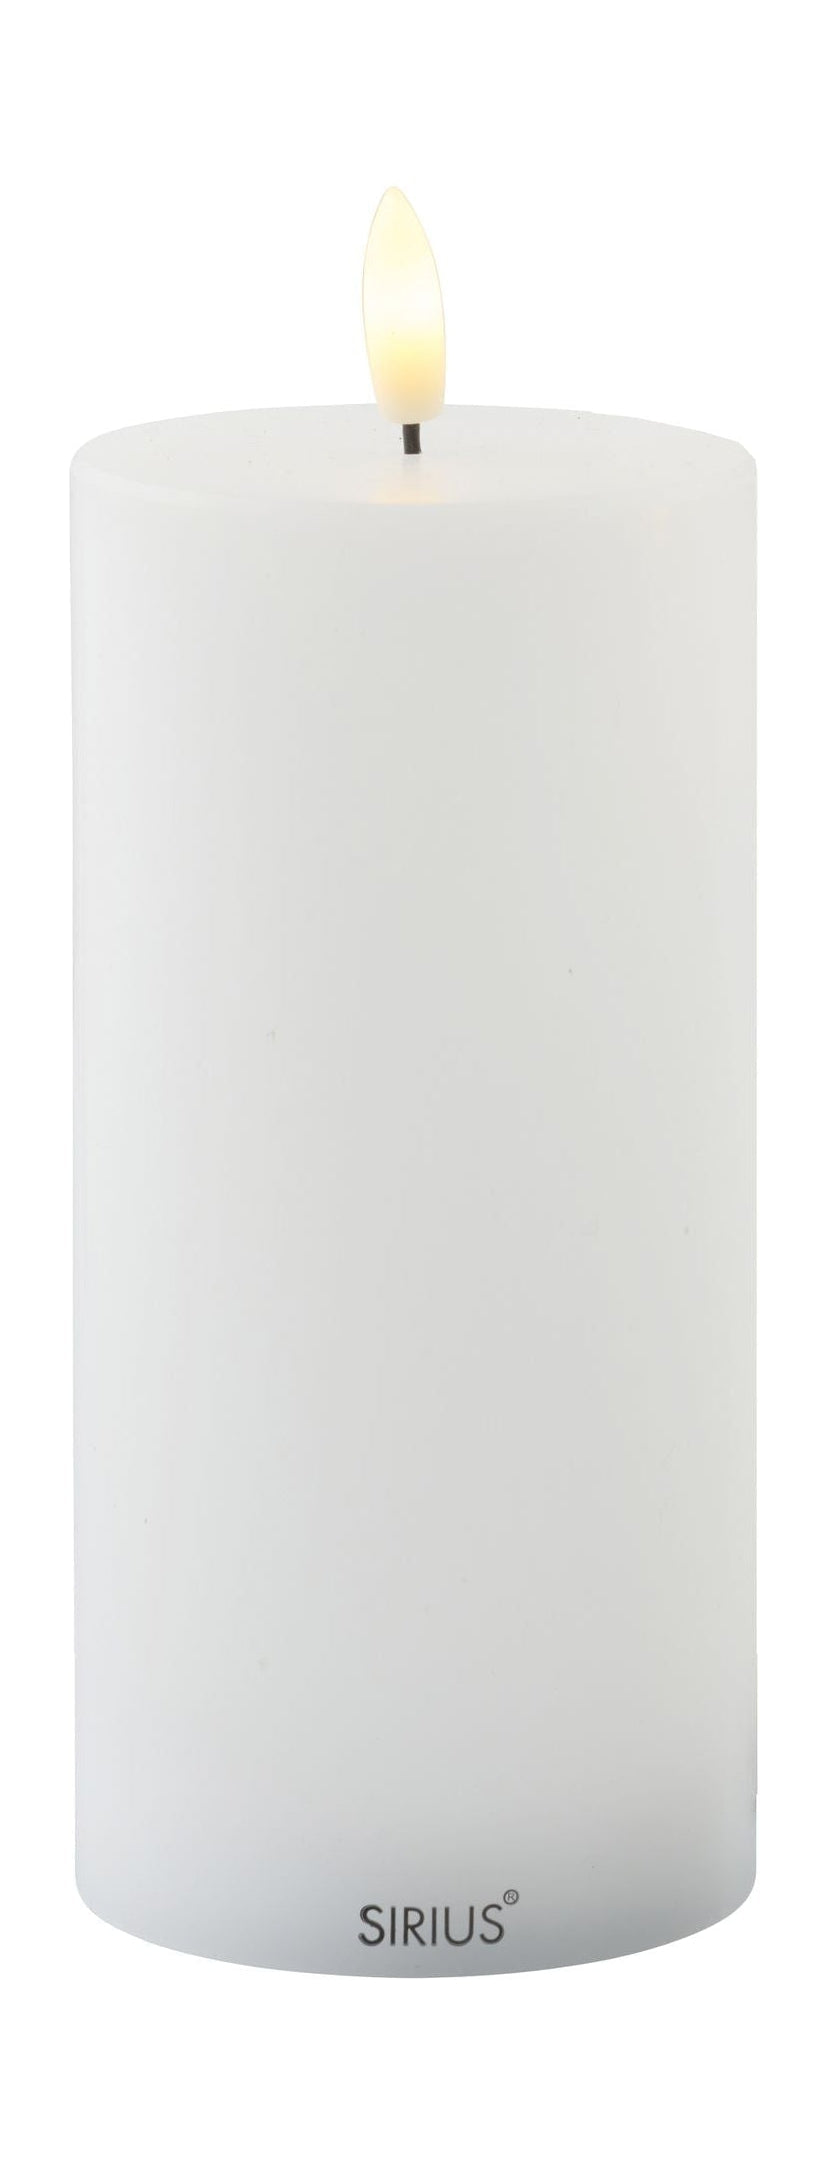 Sirius Sille ladattava LED -kynttilä valkoinen, Ø7,5x H15 cm